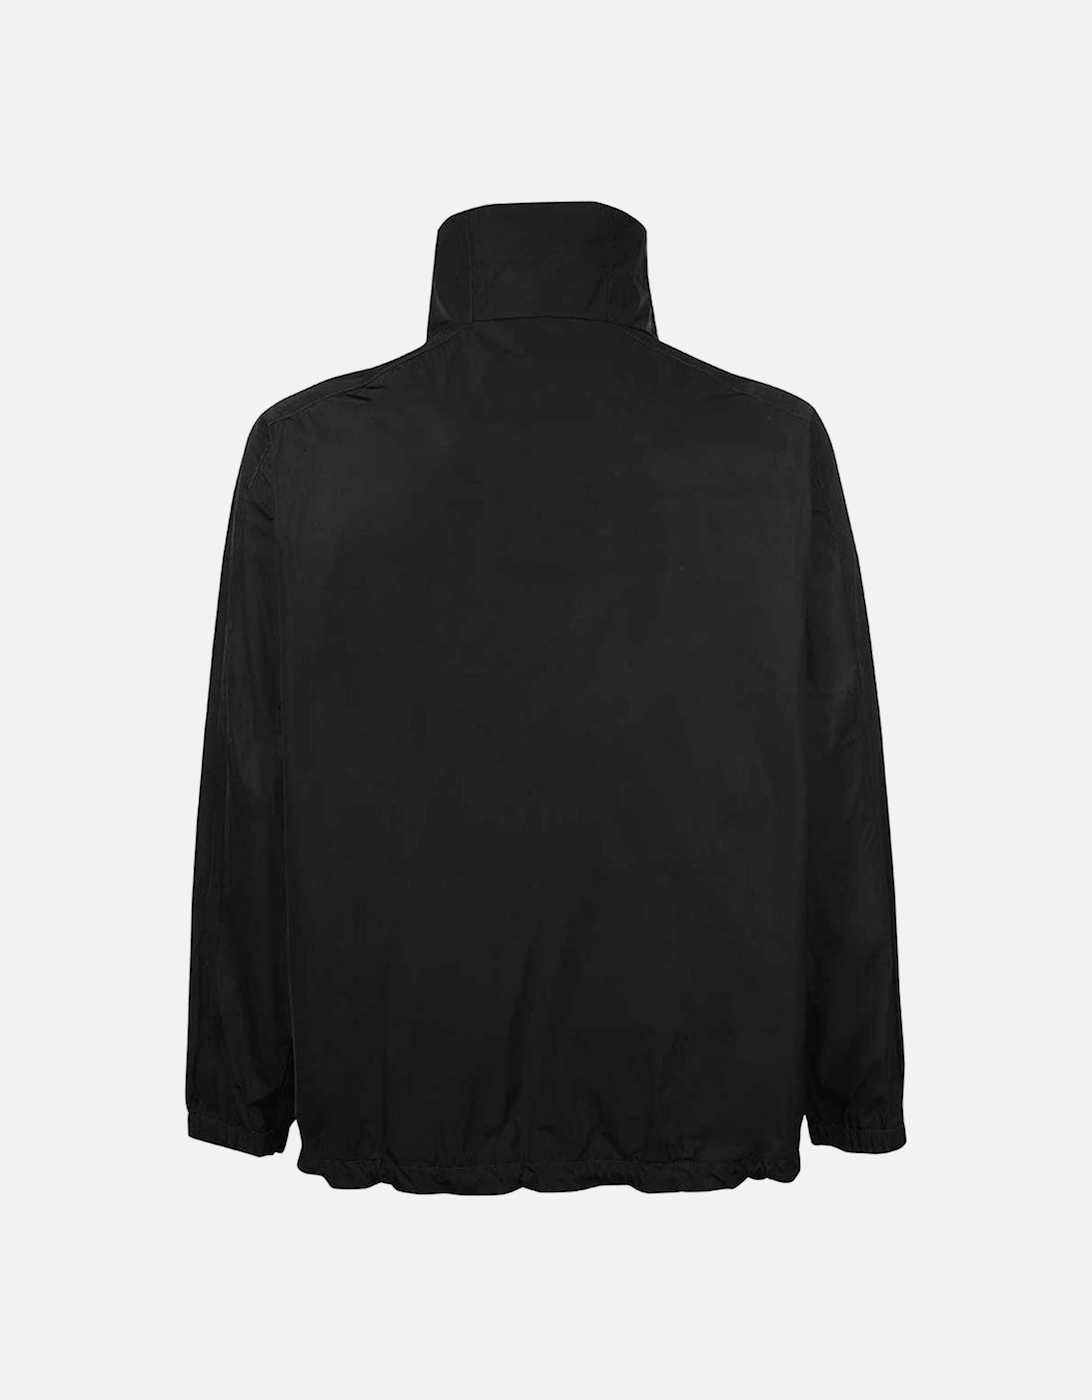 Men's High Neck Zipped Lightweight Jacket Black